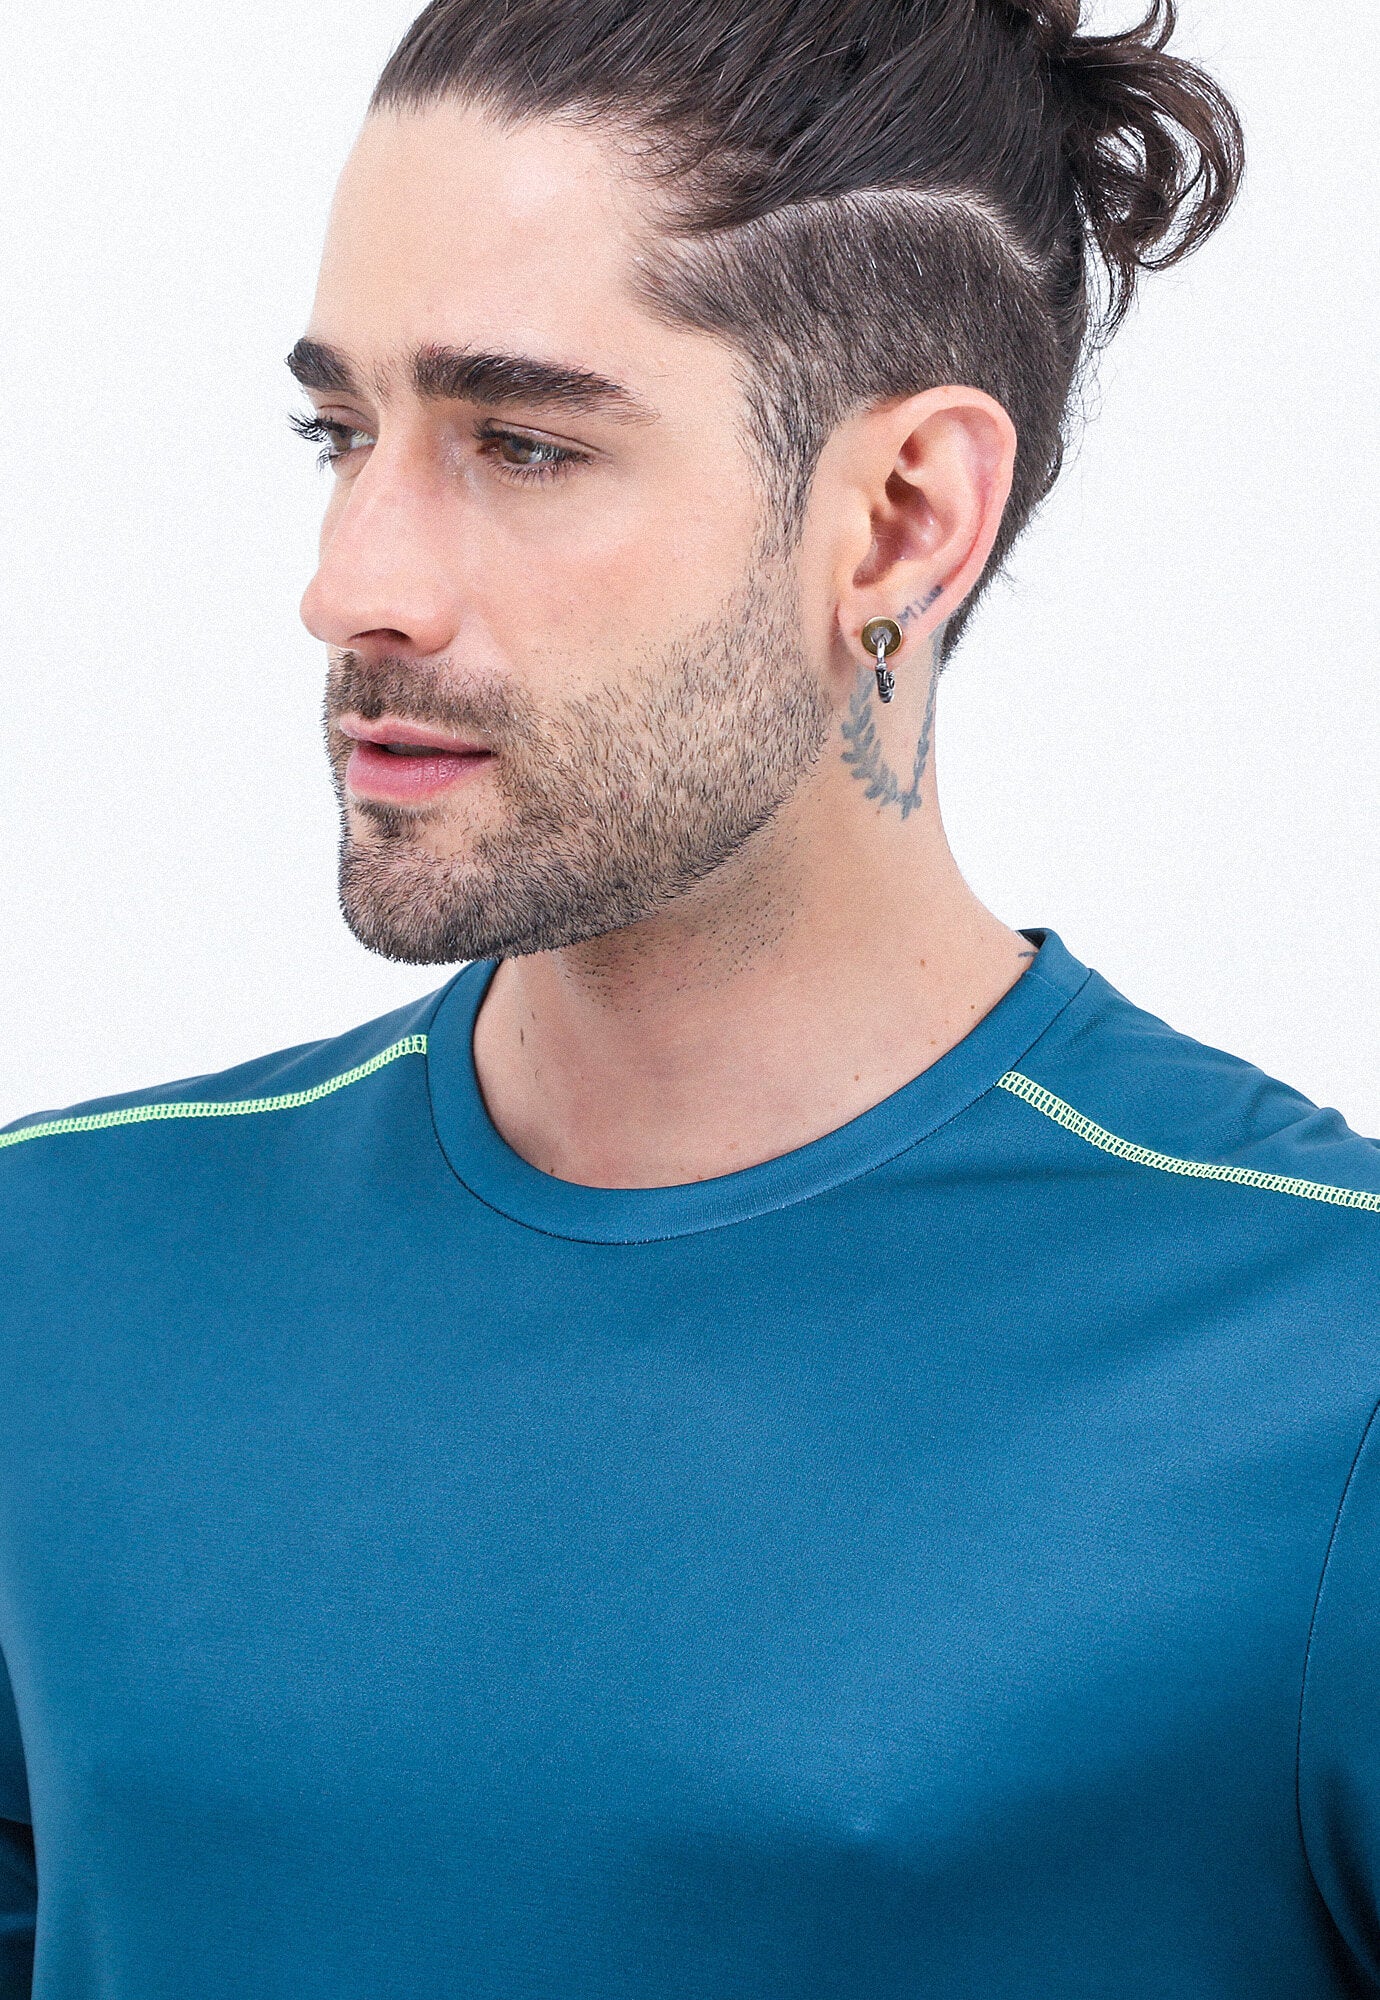 Camiseta deportiva verde esmeralda manga corto cuello redondo espalda en malla transpirable para hombre